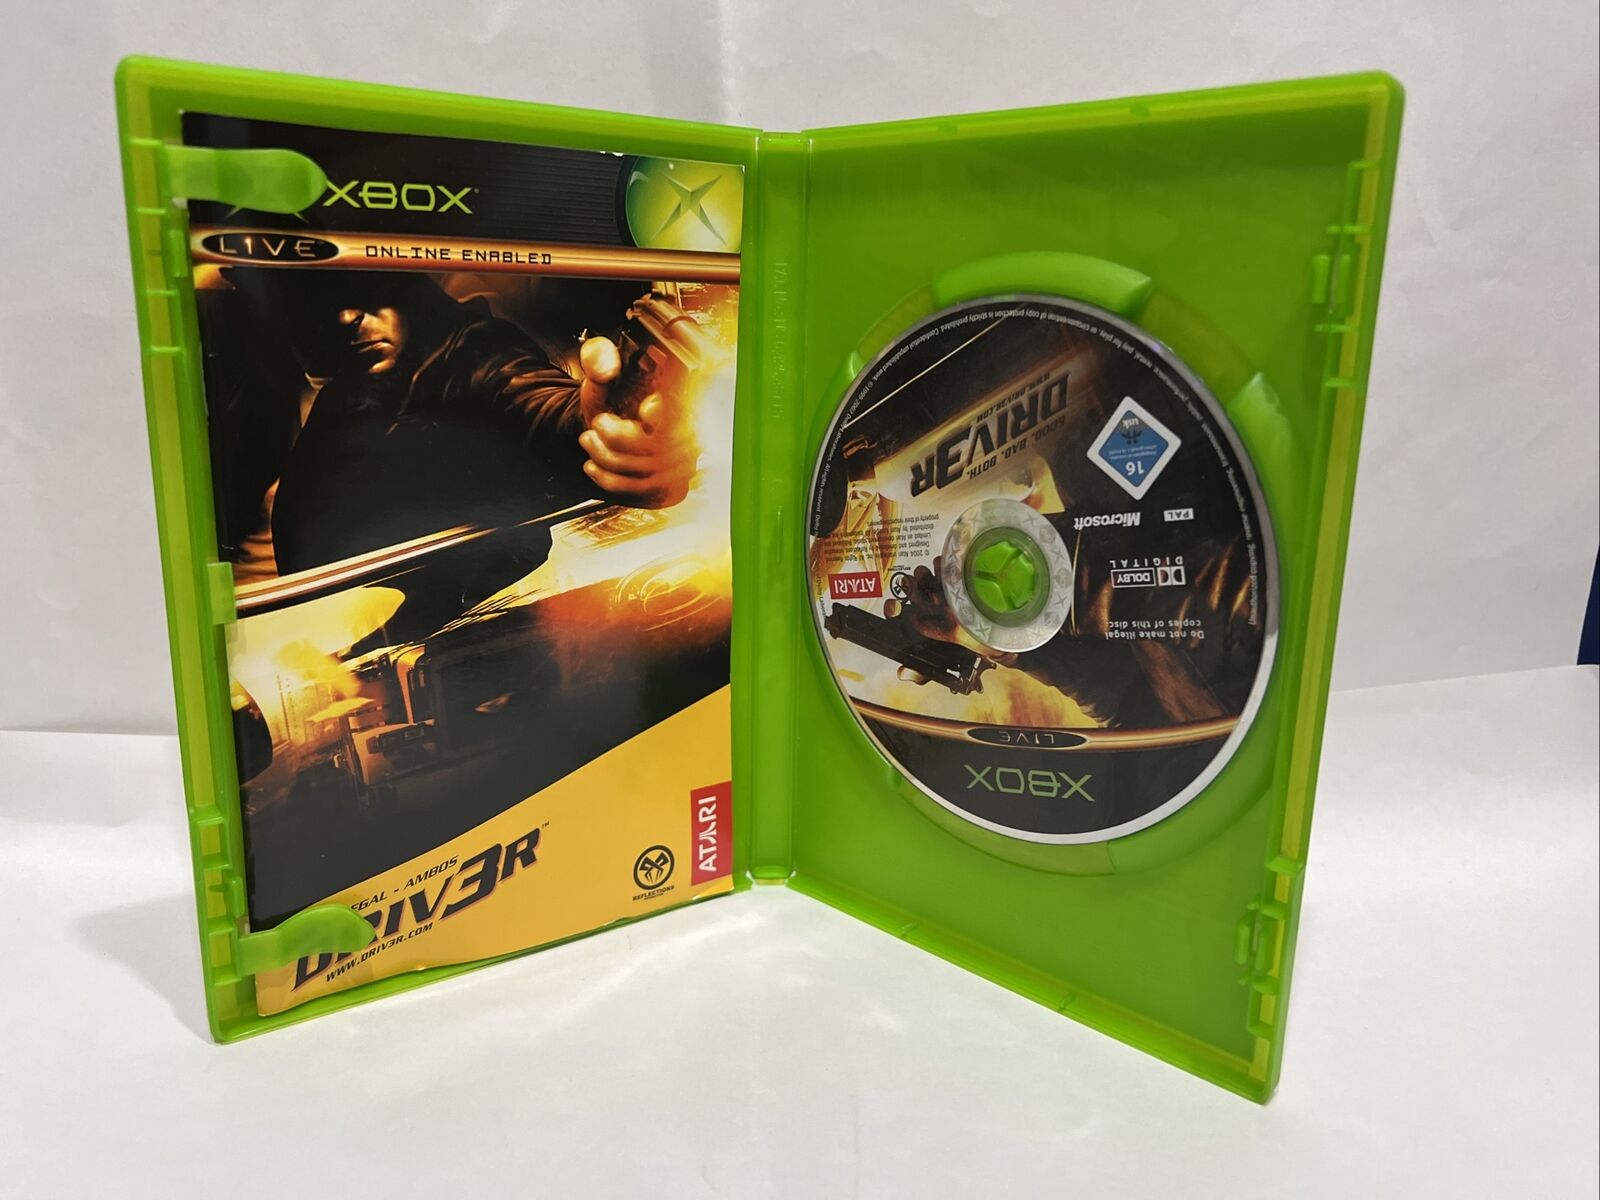 Microsoft-Xbox-Videogioco-Driver-Pal-Ita-133961253441-4